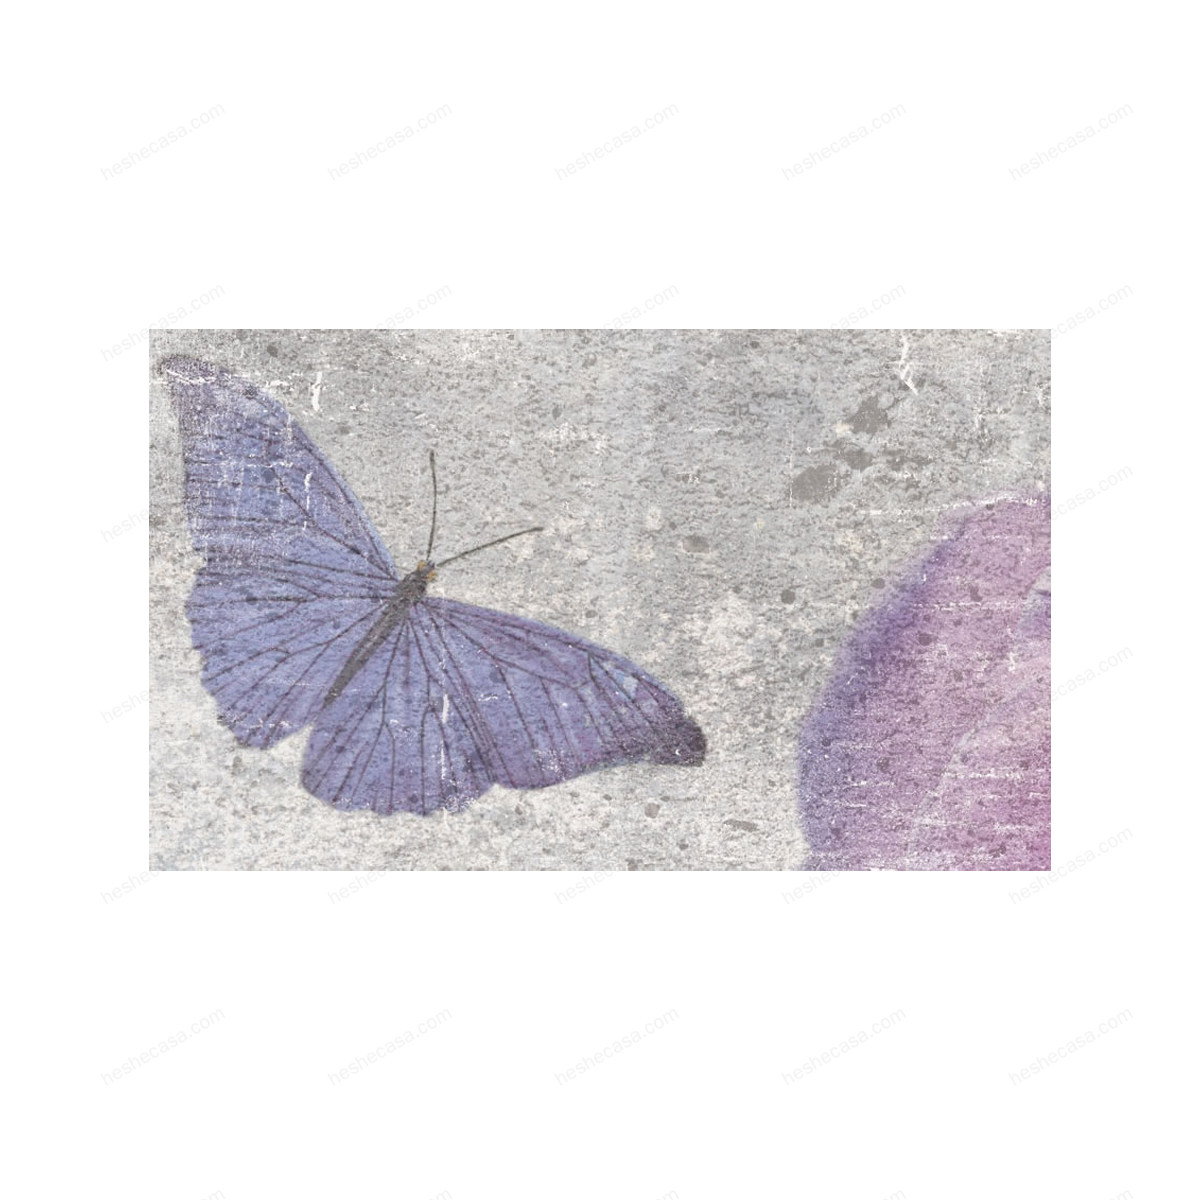 Farfalle壁纸